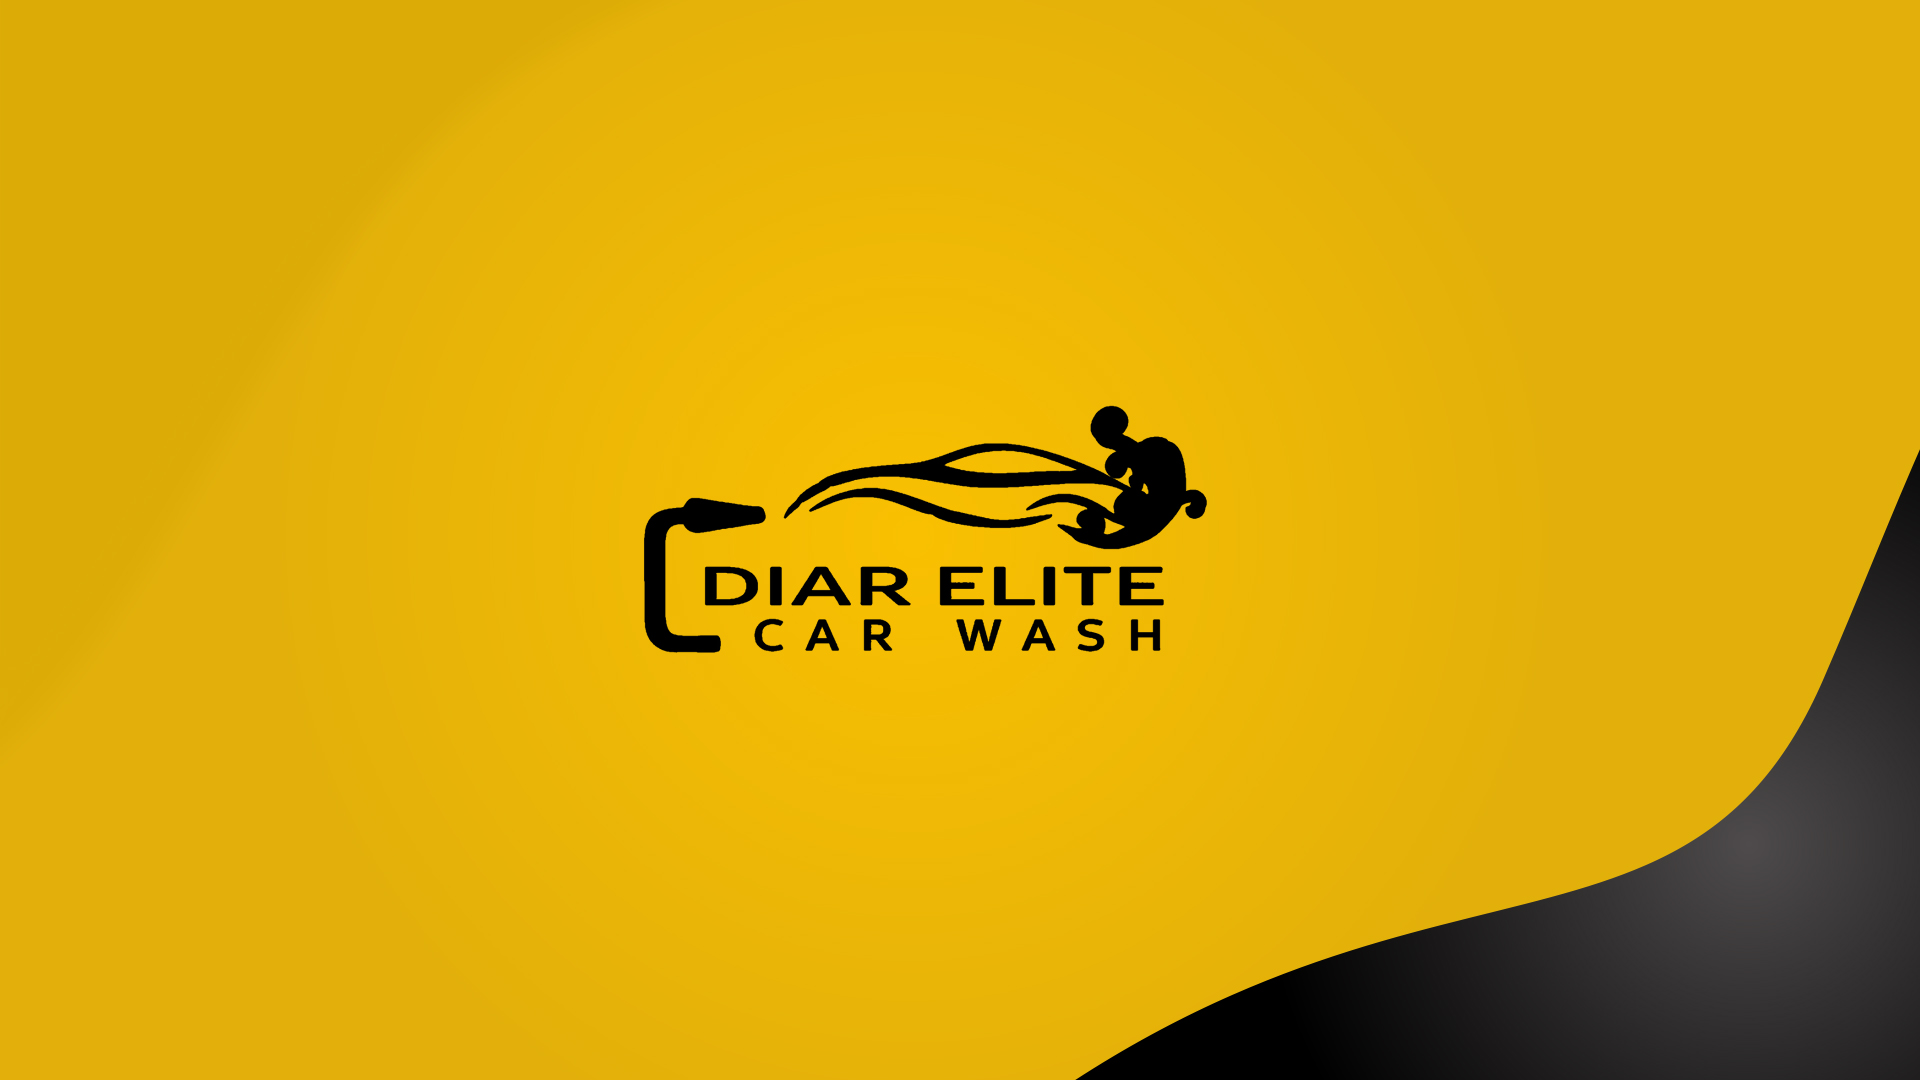 Продвижение страниц «Diar Elite Carwash» в социальных сетях